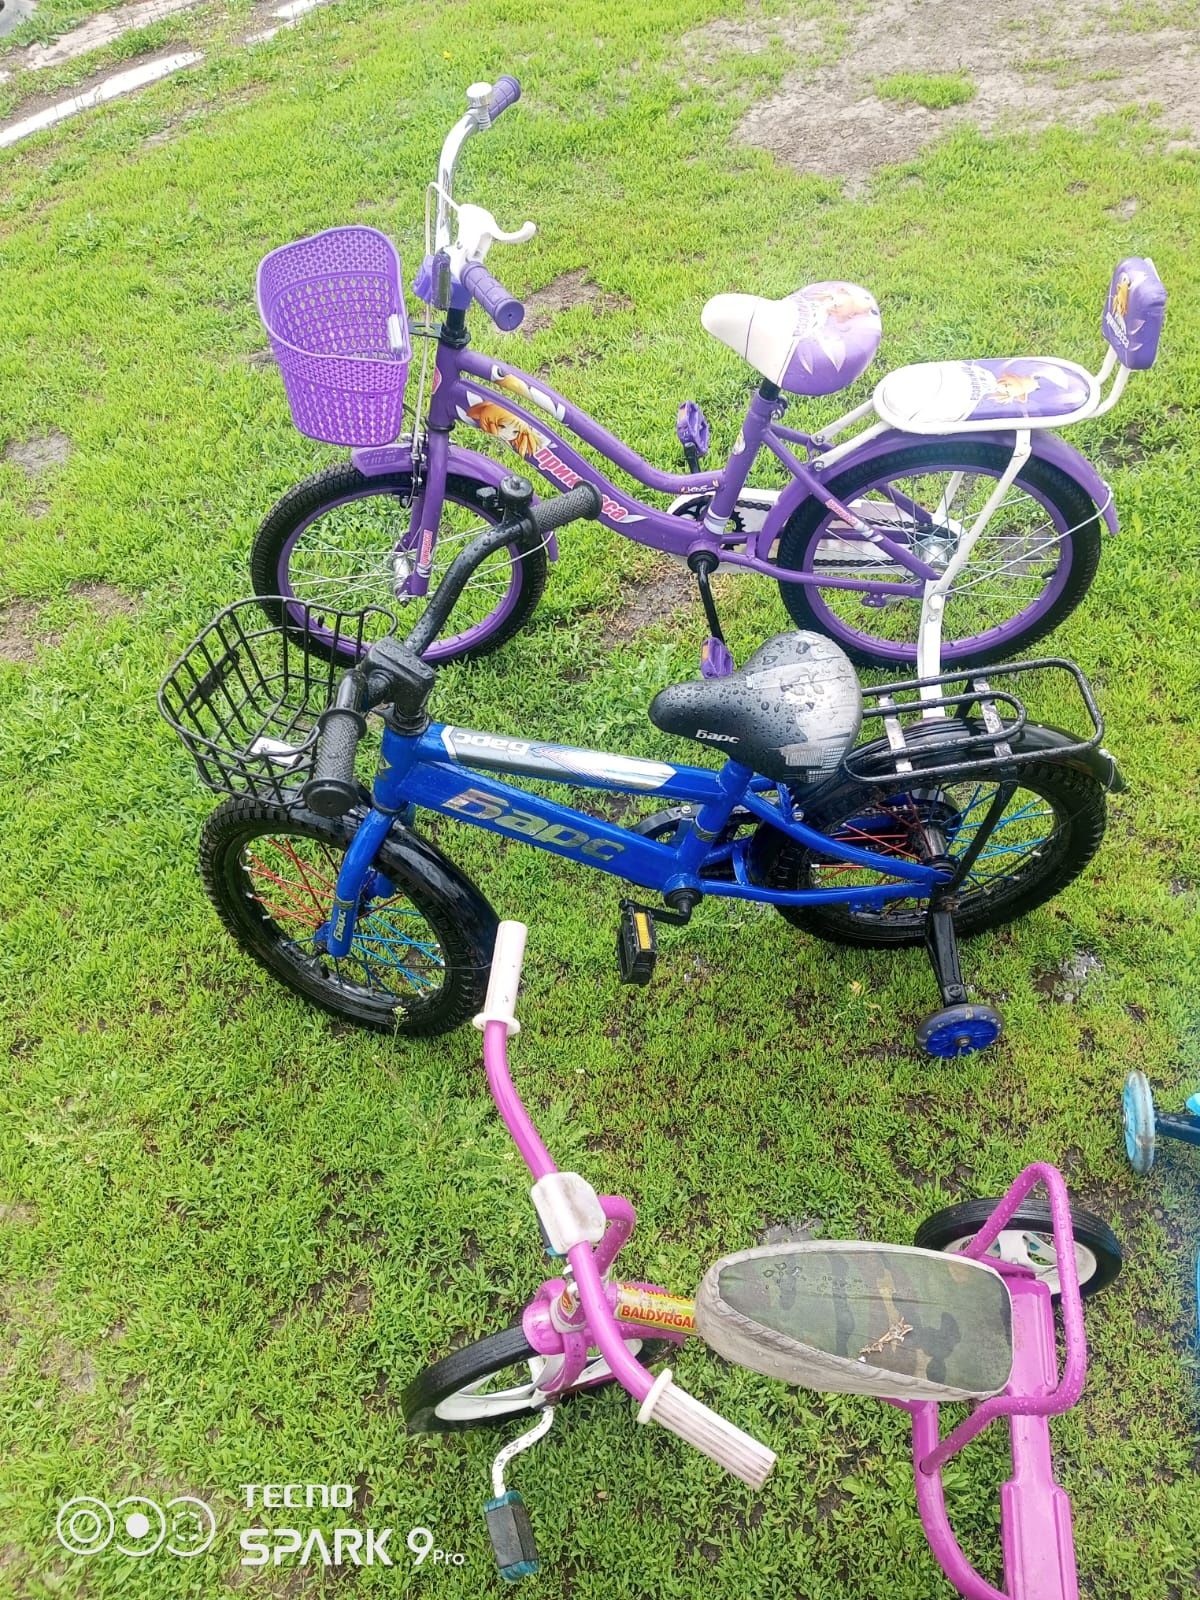 Продам велосипеды детские